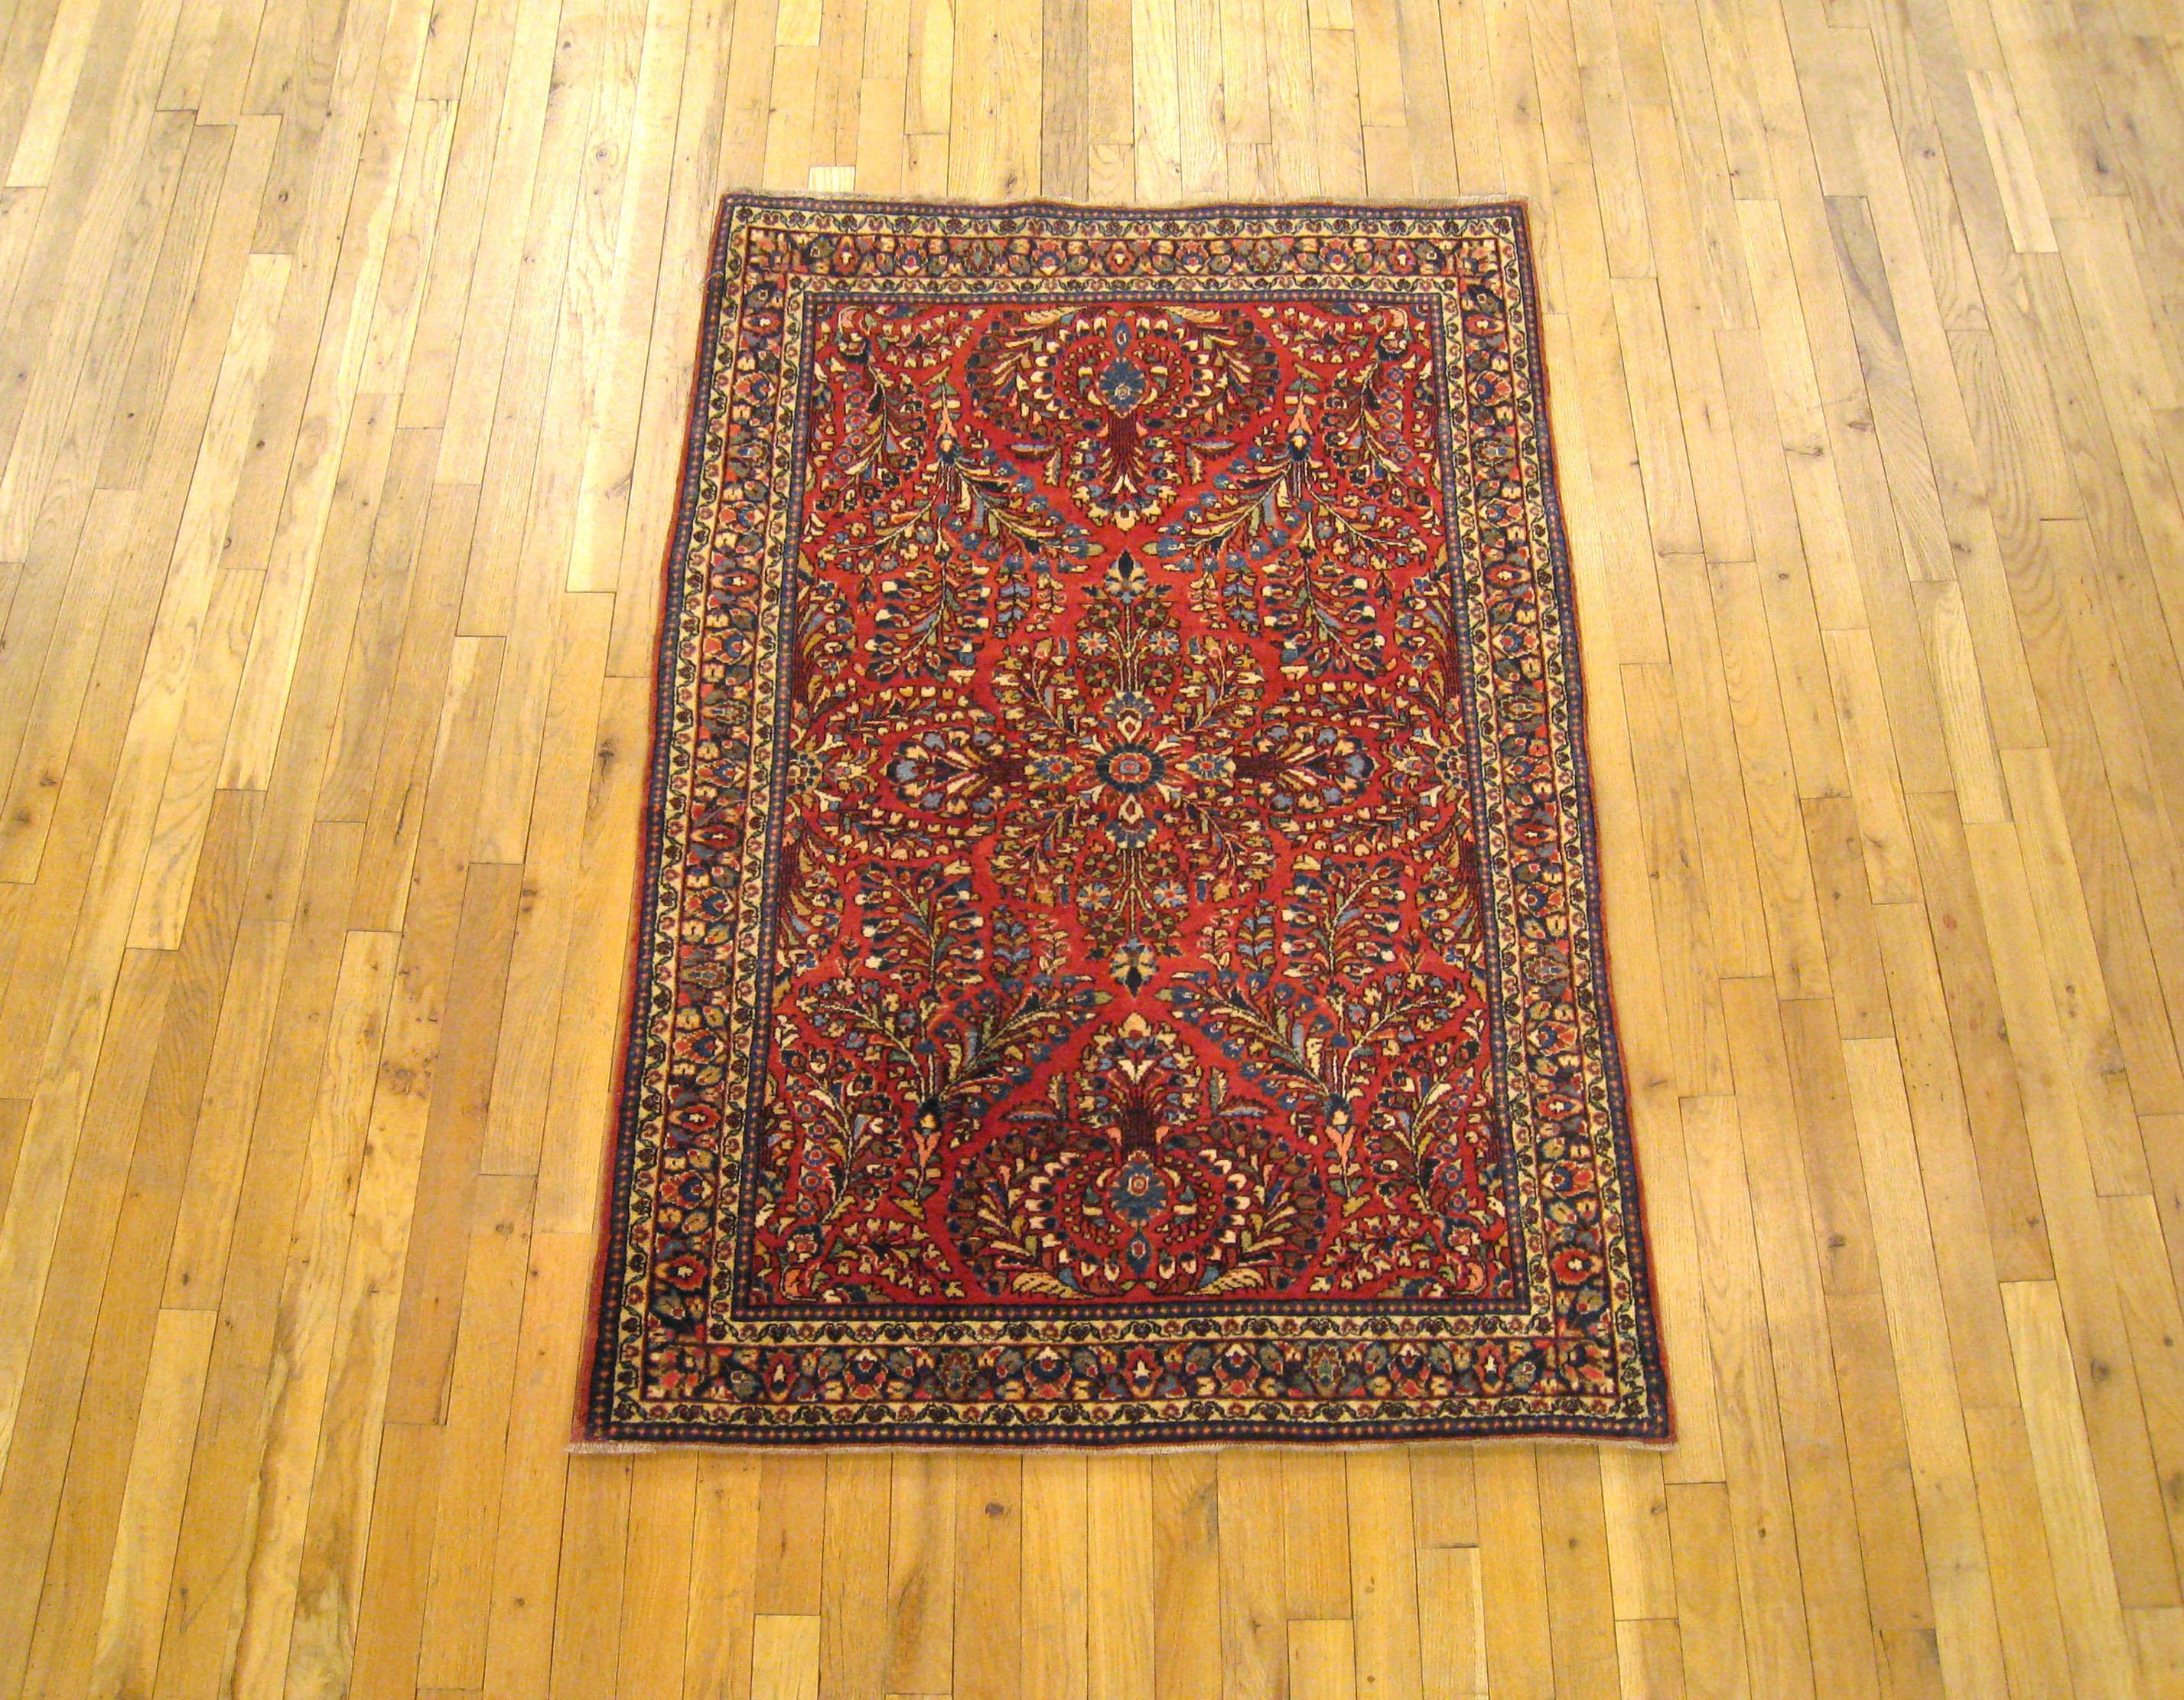 Tapis d'Orient Sarouk persan ancien, vers 1920. Taille 5'0 x 3'3. Ce charmant tapis persan noué à la main se caractérise par un motif floral élaboré dans le champ central rouge, qui est entouré d'une bordure bleue feuillue. Composé de laine robuste